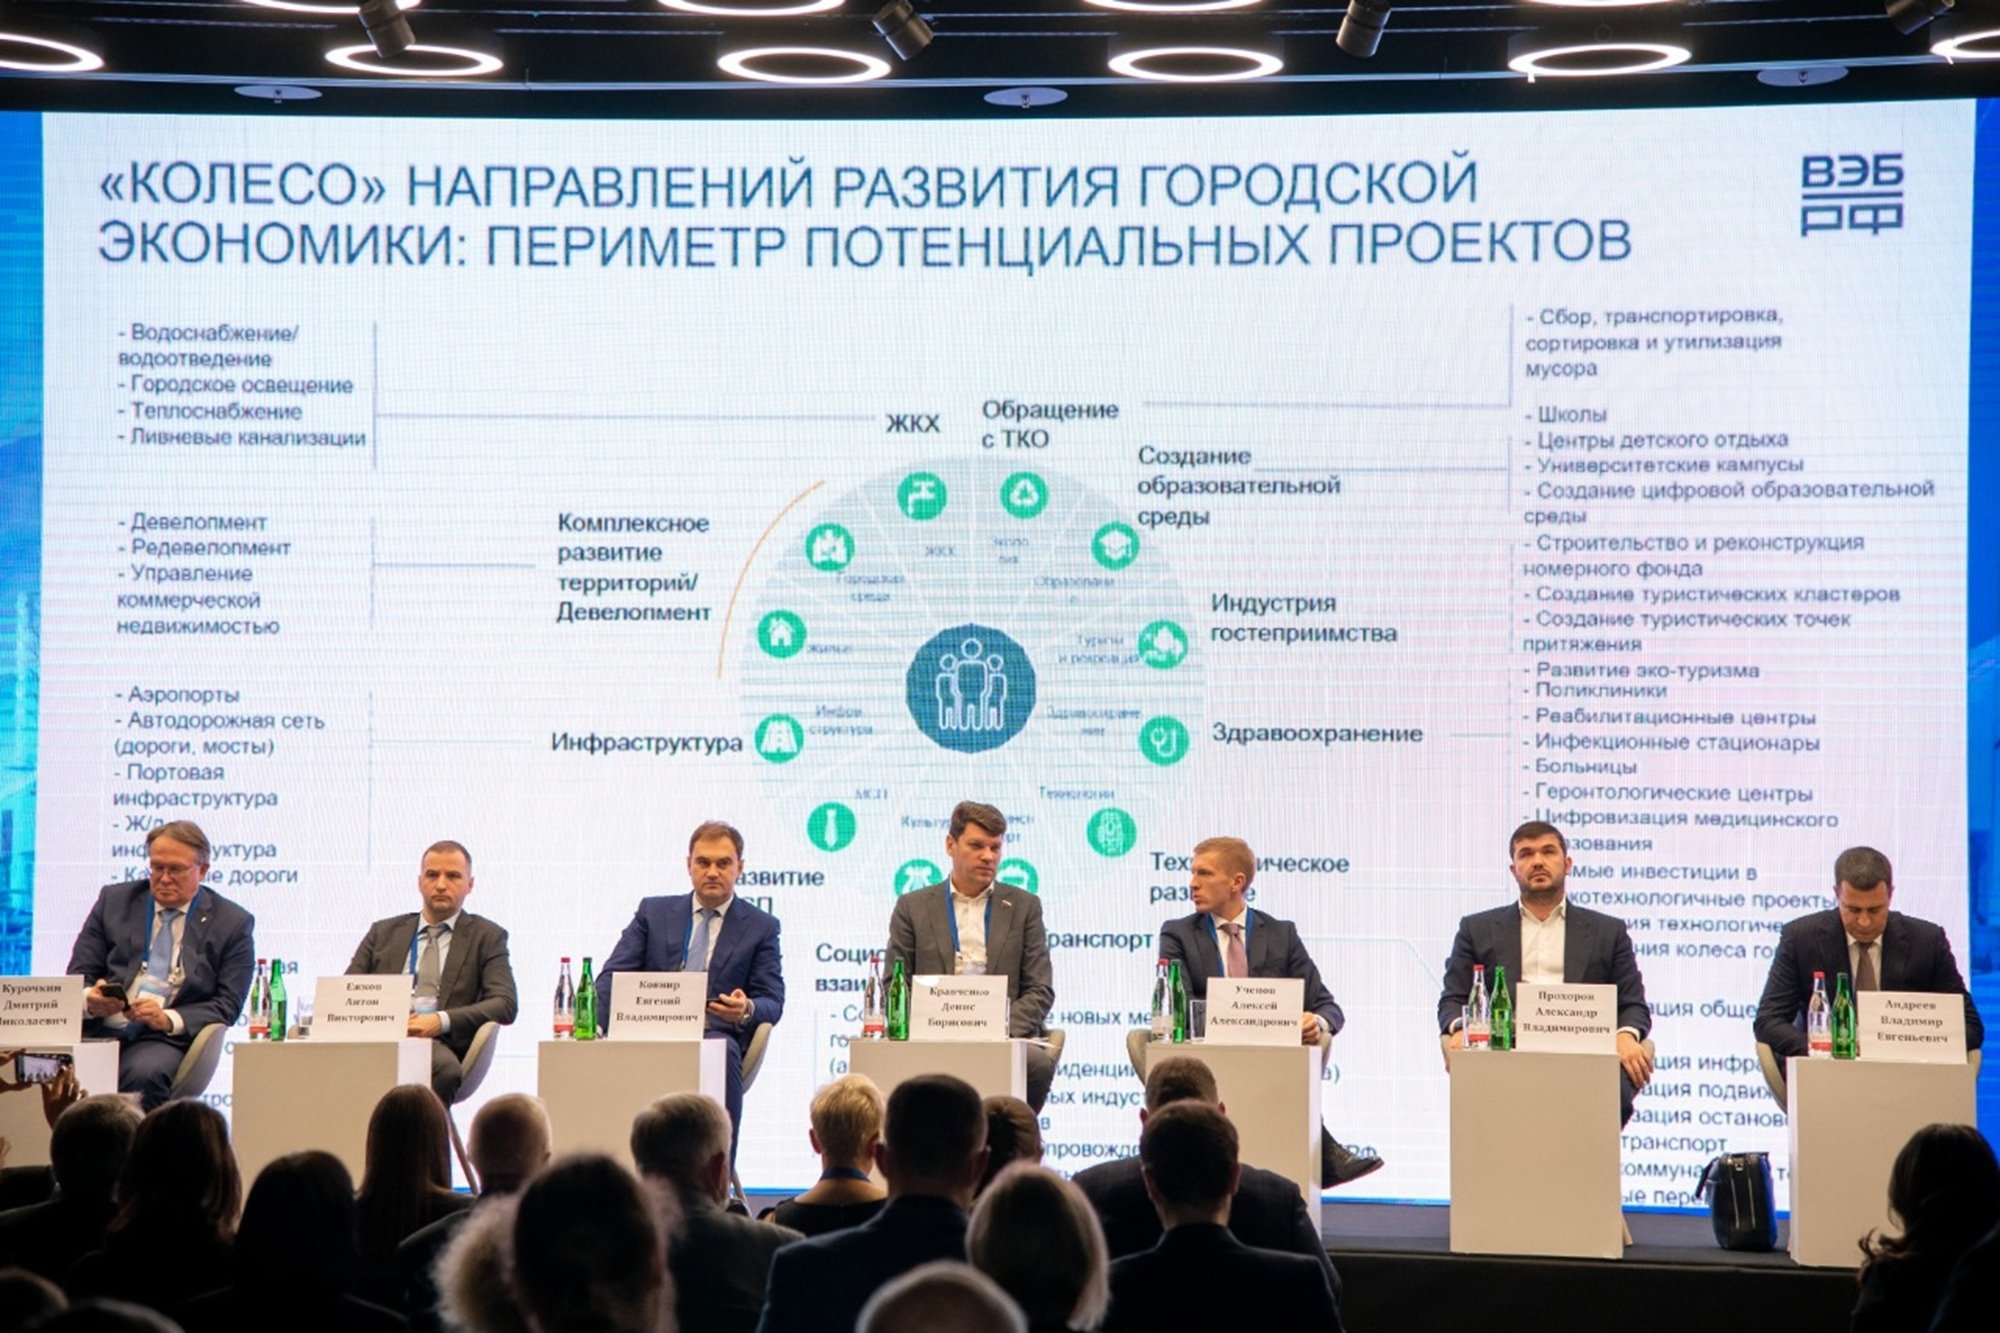 5 октября в ГК «Президент-отель» в Москве пройдет XVII Национальный промышленный Конгресс: Приоритеты развития